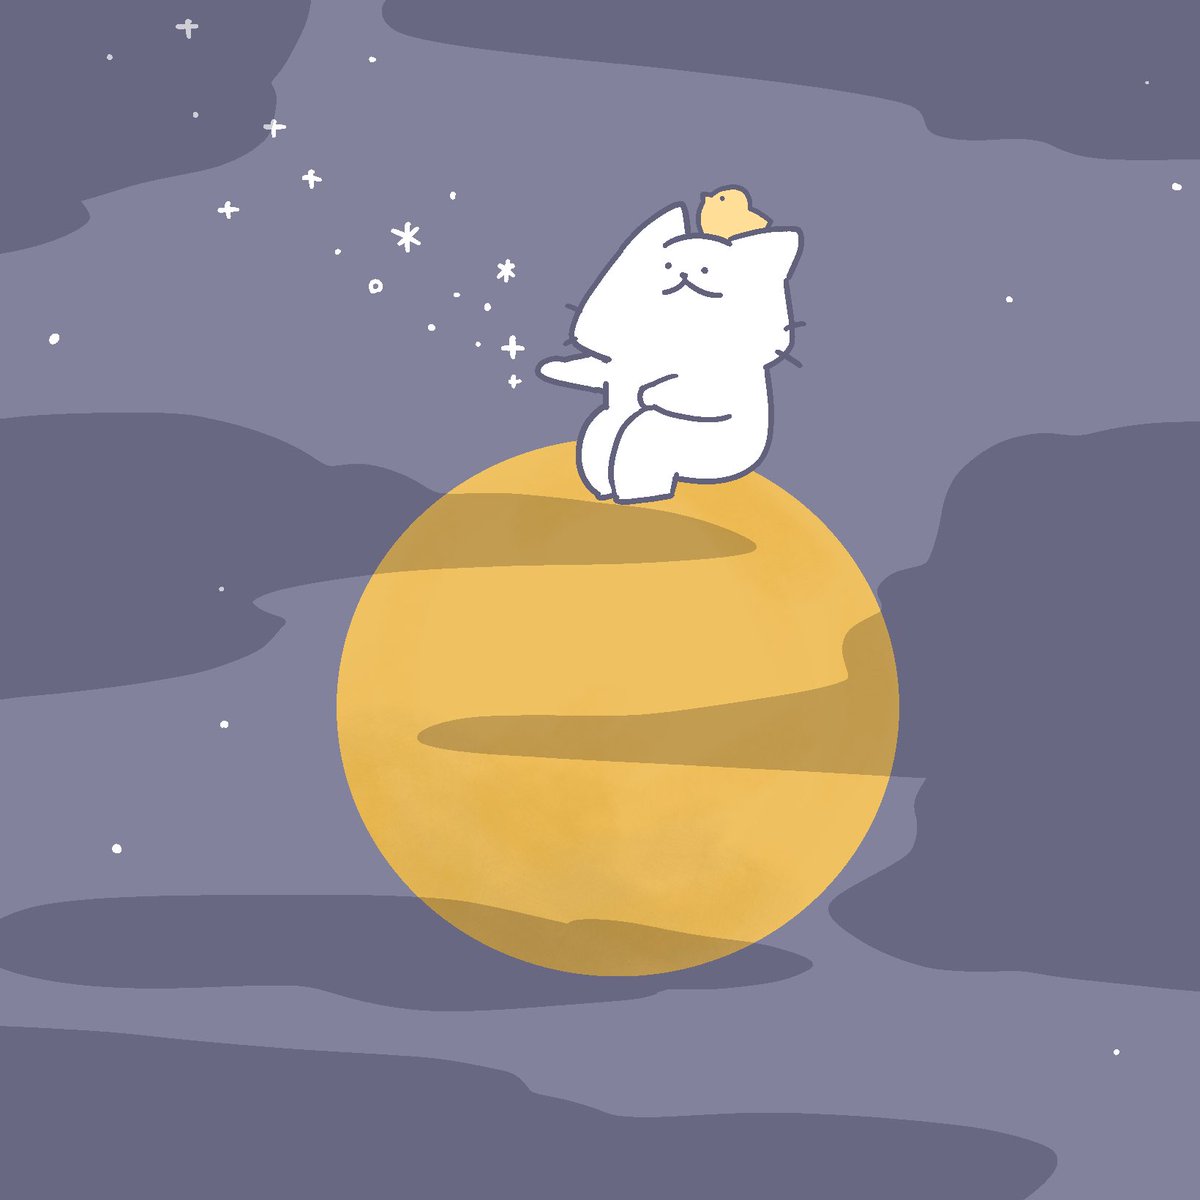 「雲の間からスーパーブルームーンが見えました来月も良い月になりますようにฅ^•ω•」|猫原のしのイラスト